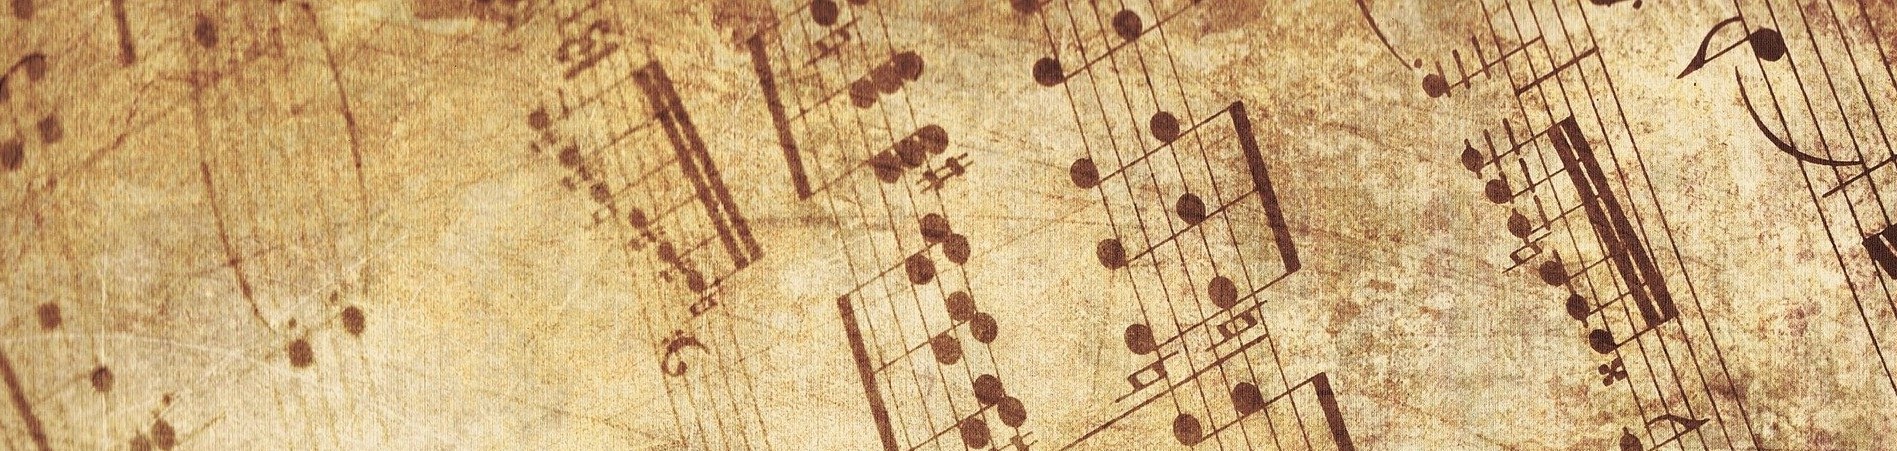 Blasorchesternoten Sorgenbrecher Polka - Titelbild